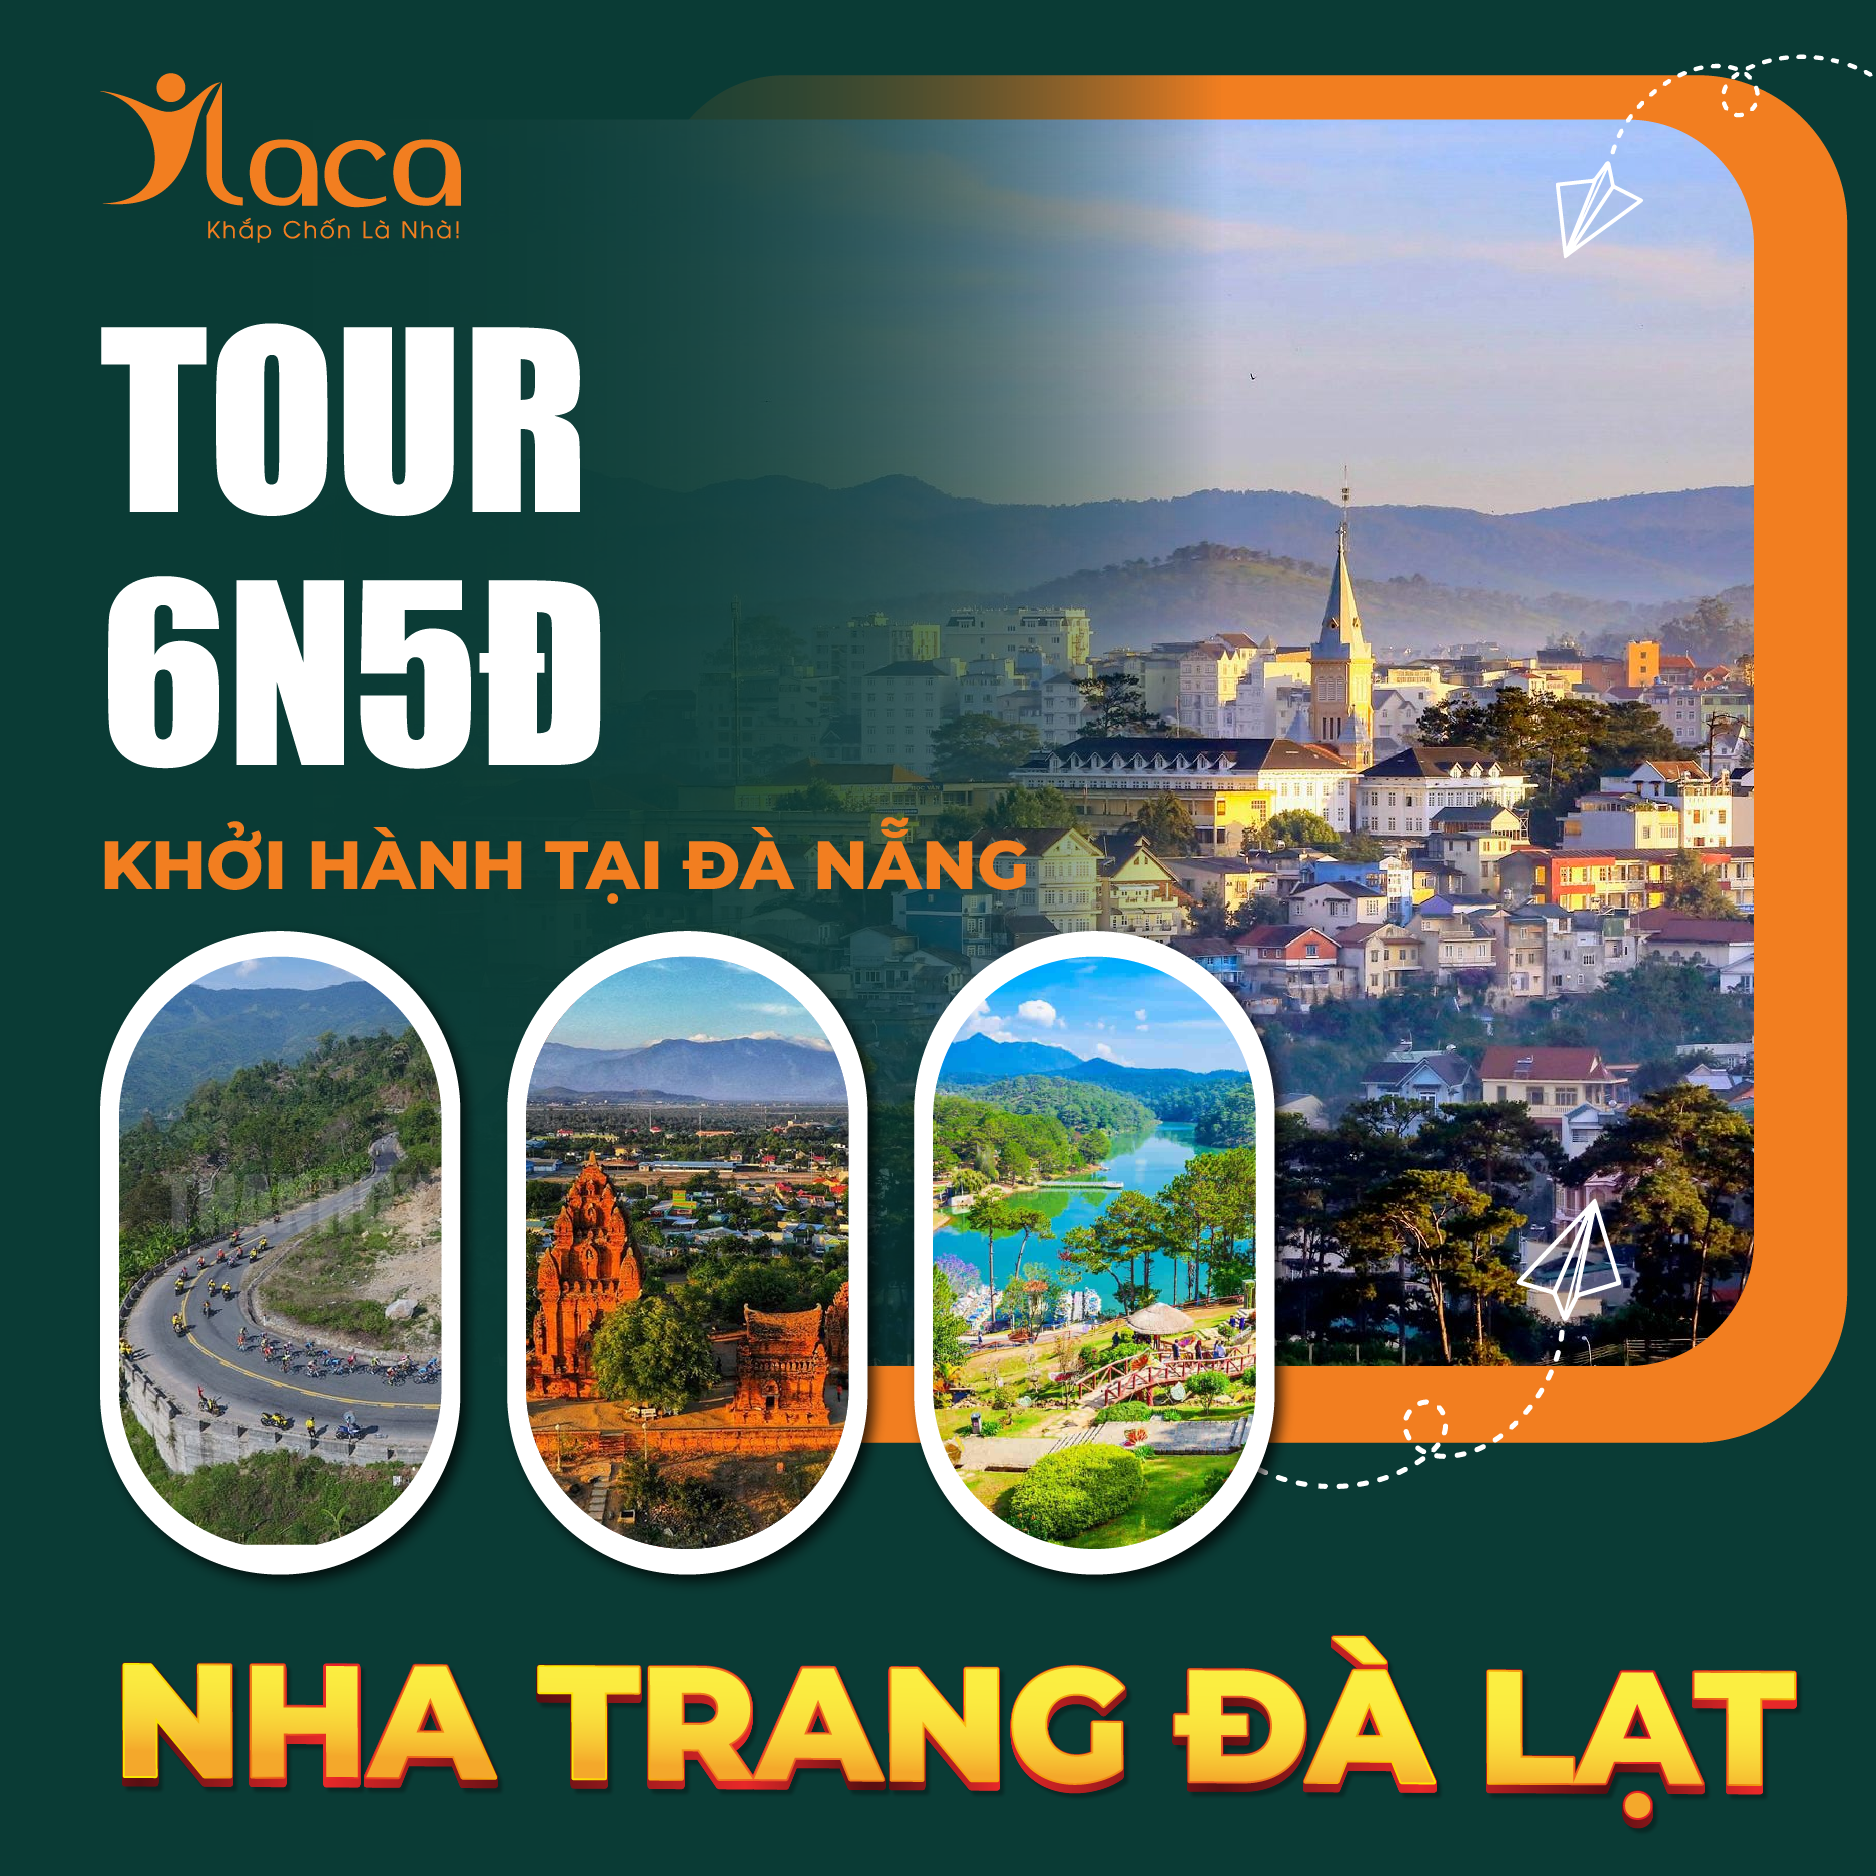 Tour Nha Trang Đà Lạt 6 Ngày 5 Đêm Khởi Hành Tại Đà Nẵng